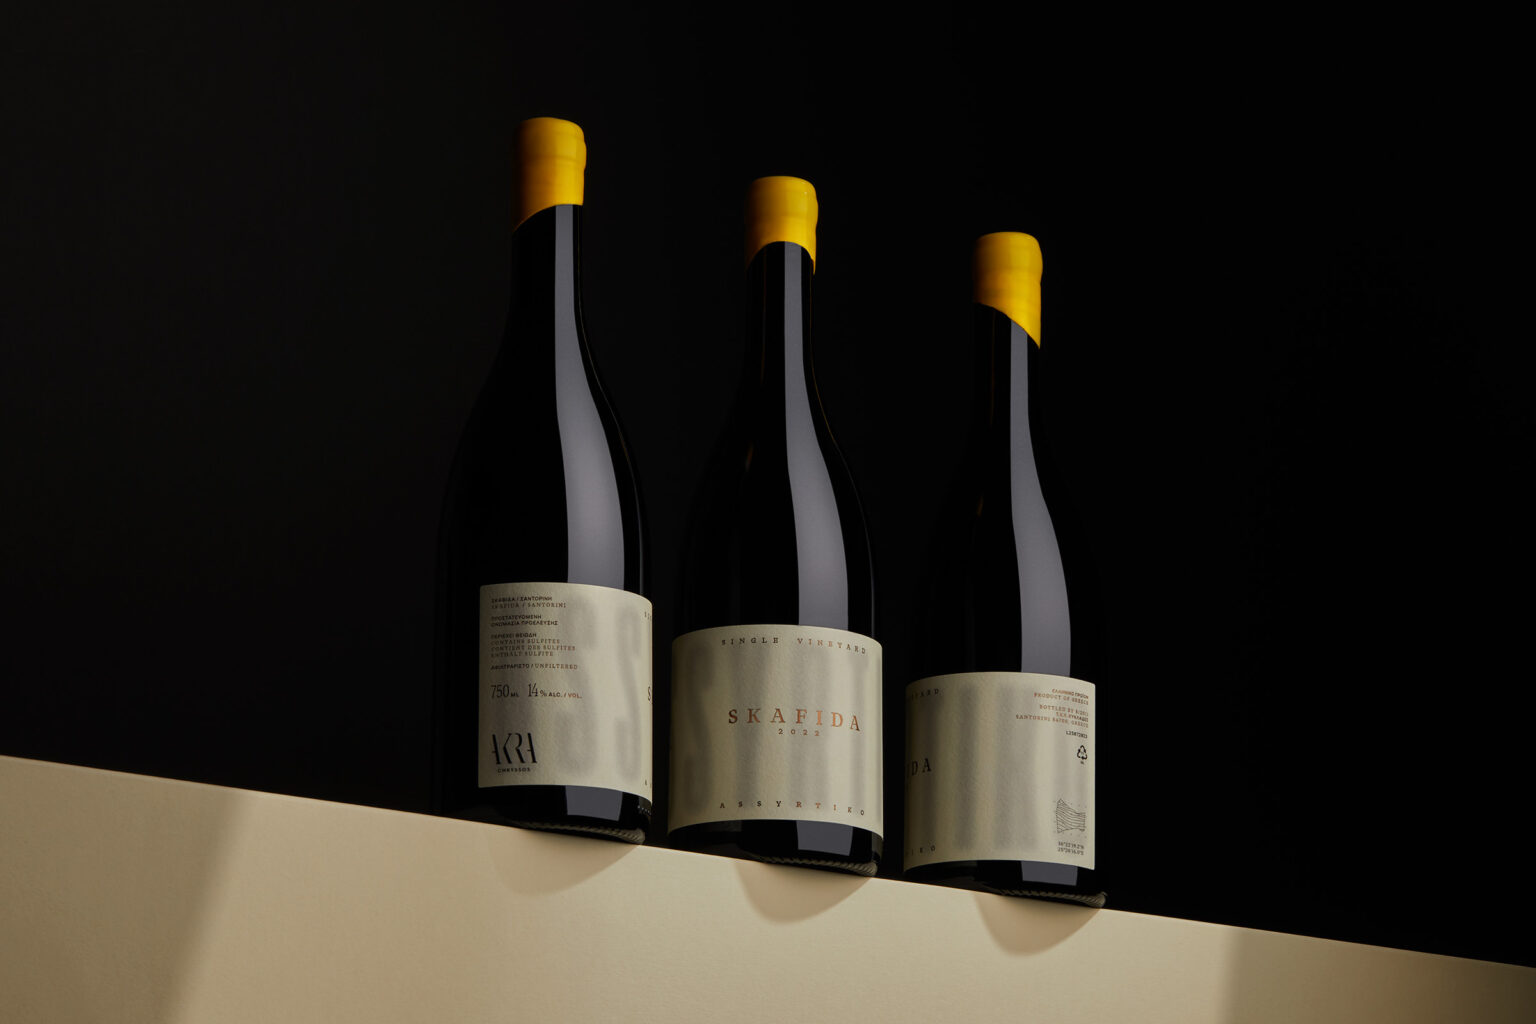 skafida wine packaging thumbs kommigraphics